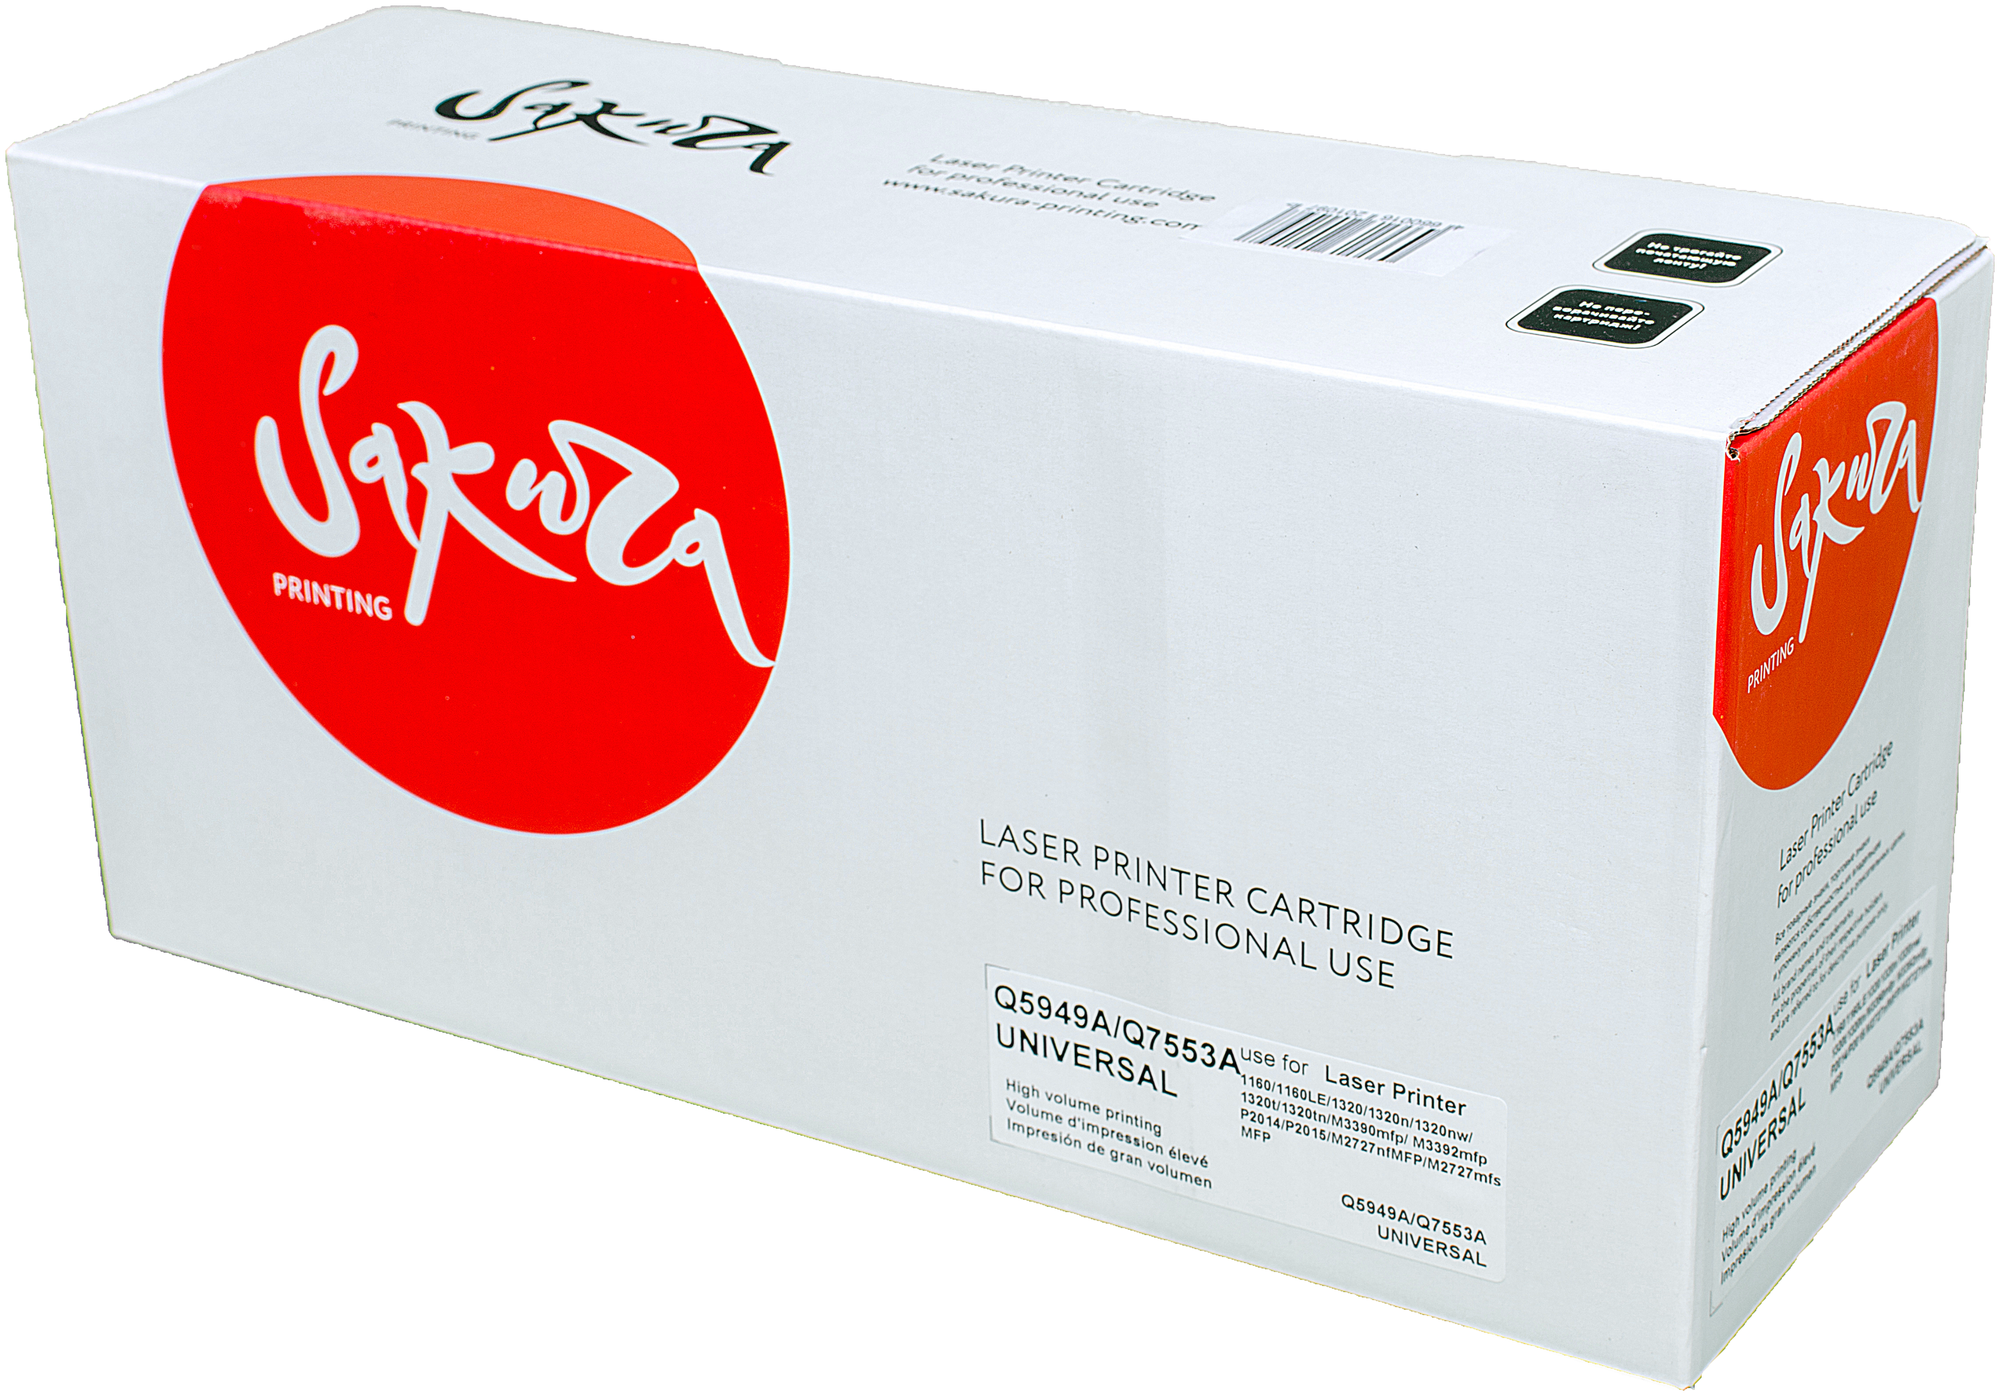 Картридж лазерный Sakura Q5949A/Q7553A для HP LaserJet 1160/1320,P2010/2014/2015, черный